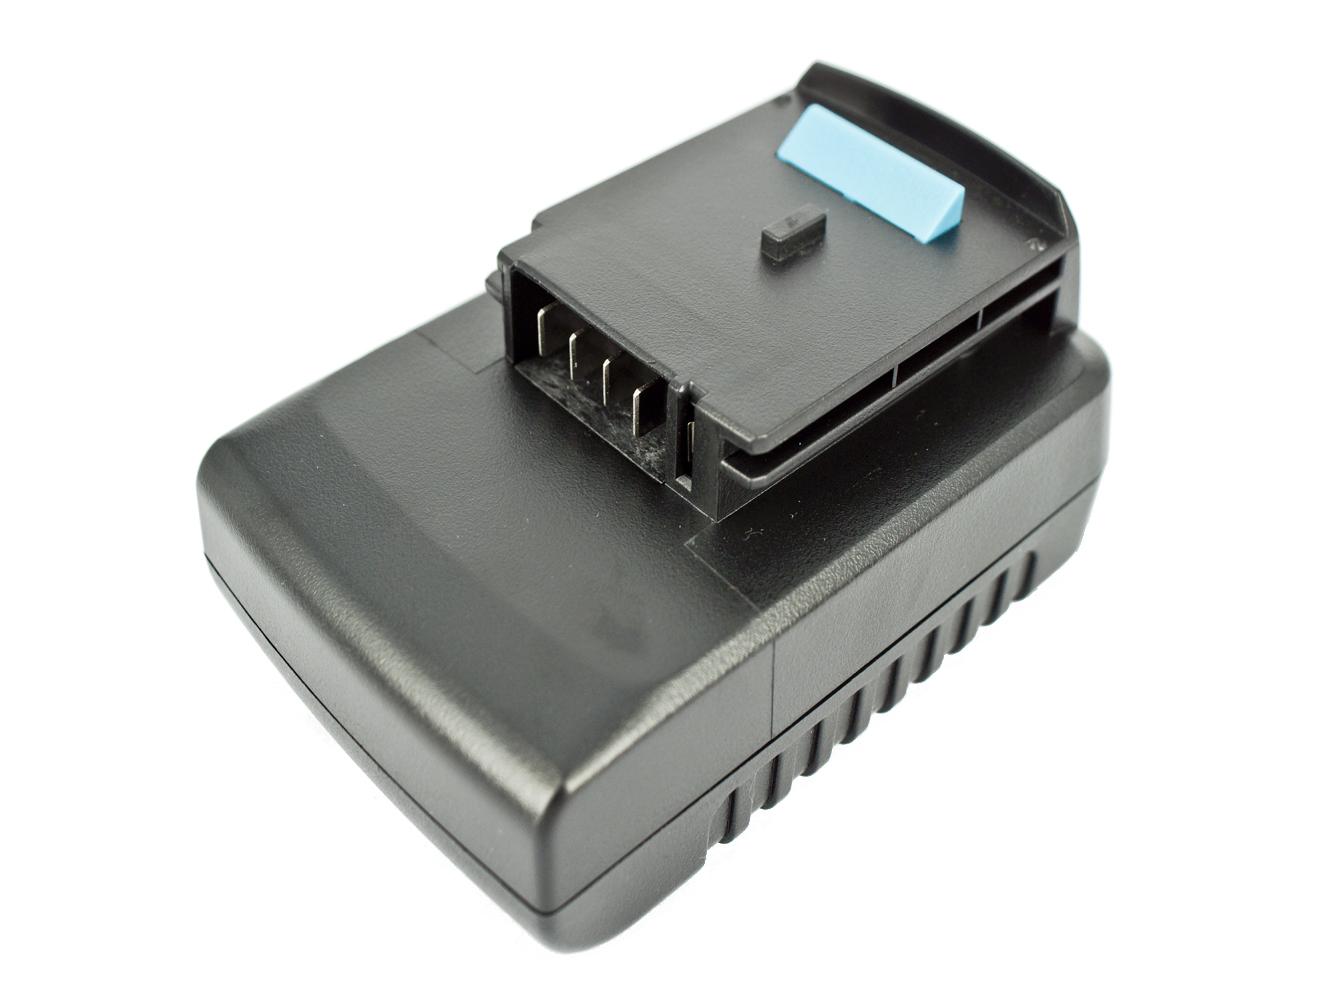 Batterie de remplacement compatible pour BLACK & DECKER GKC1000L, GLC2500L, GPC1800L, GTC610L, GTC800L, GXC1000L, HP186F4L, HP186F4LBK, HP186F4LK, HP188F4LBK, HP188F4LK